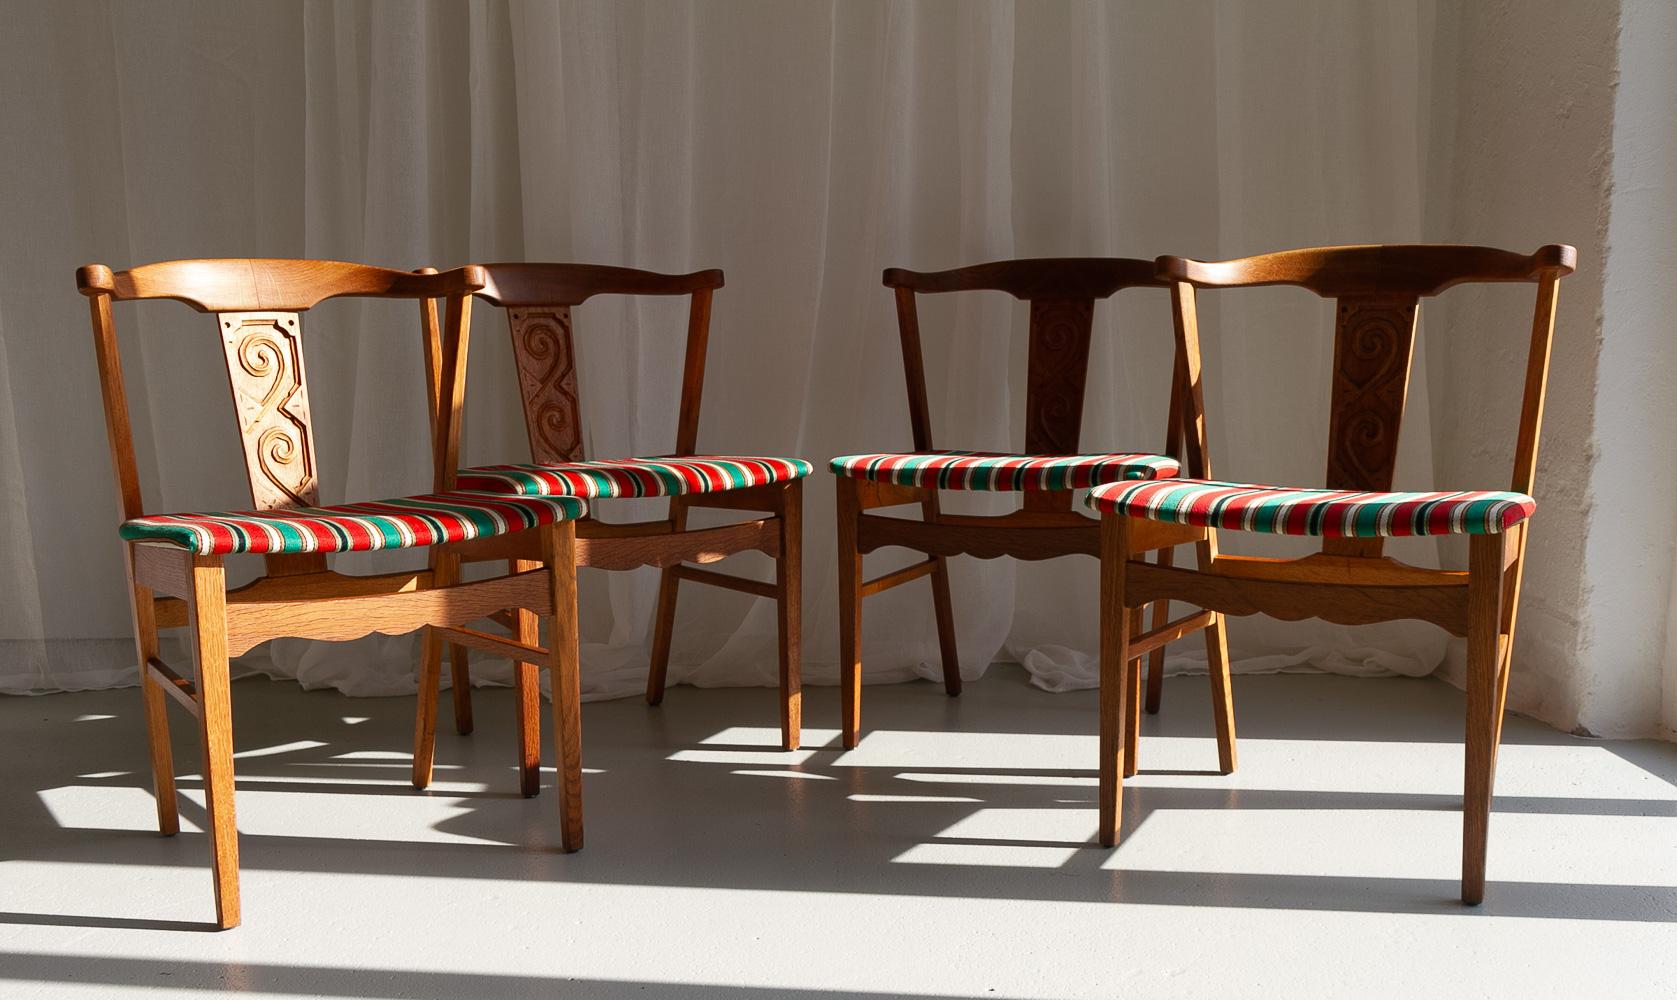 Vintage Danish Oak Dining Chairs von Kjærnulf, 1960er Jahre. Satz von 4.
Satz von vier Esszimmerstühlen aus massiver Eiche, zugeschrieben dem dänischen Architekten Henning/Henry Kjærnulf, Dänemark. Er ist berühmt für die Kombination von dänischem